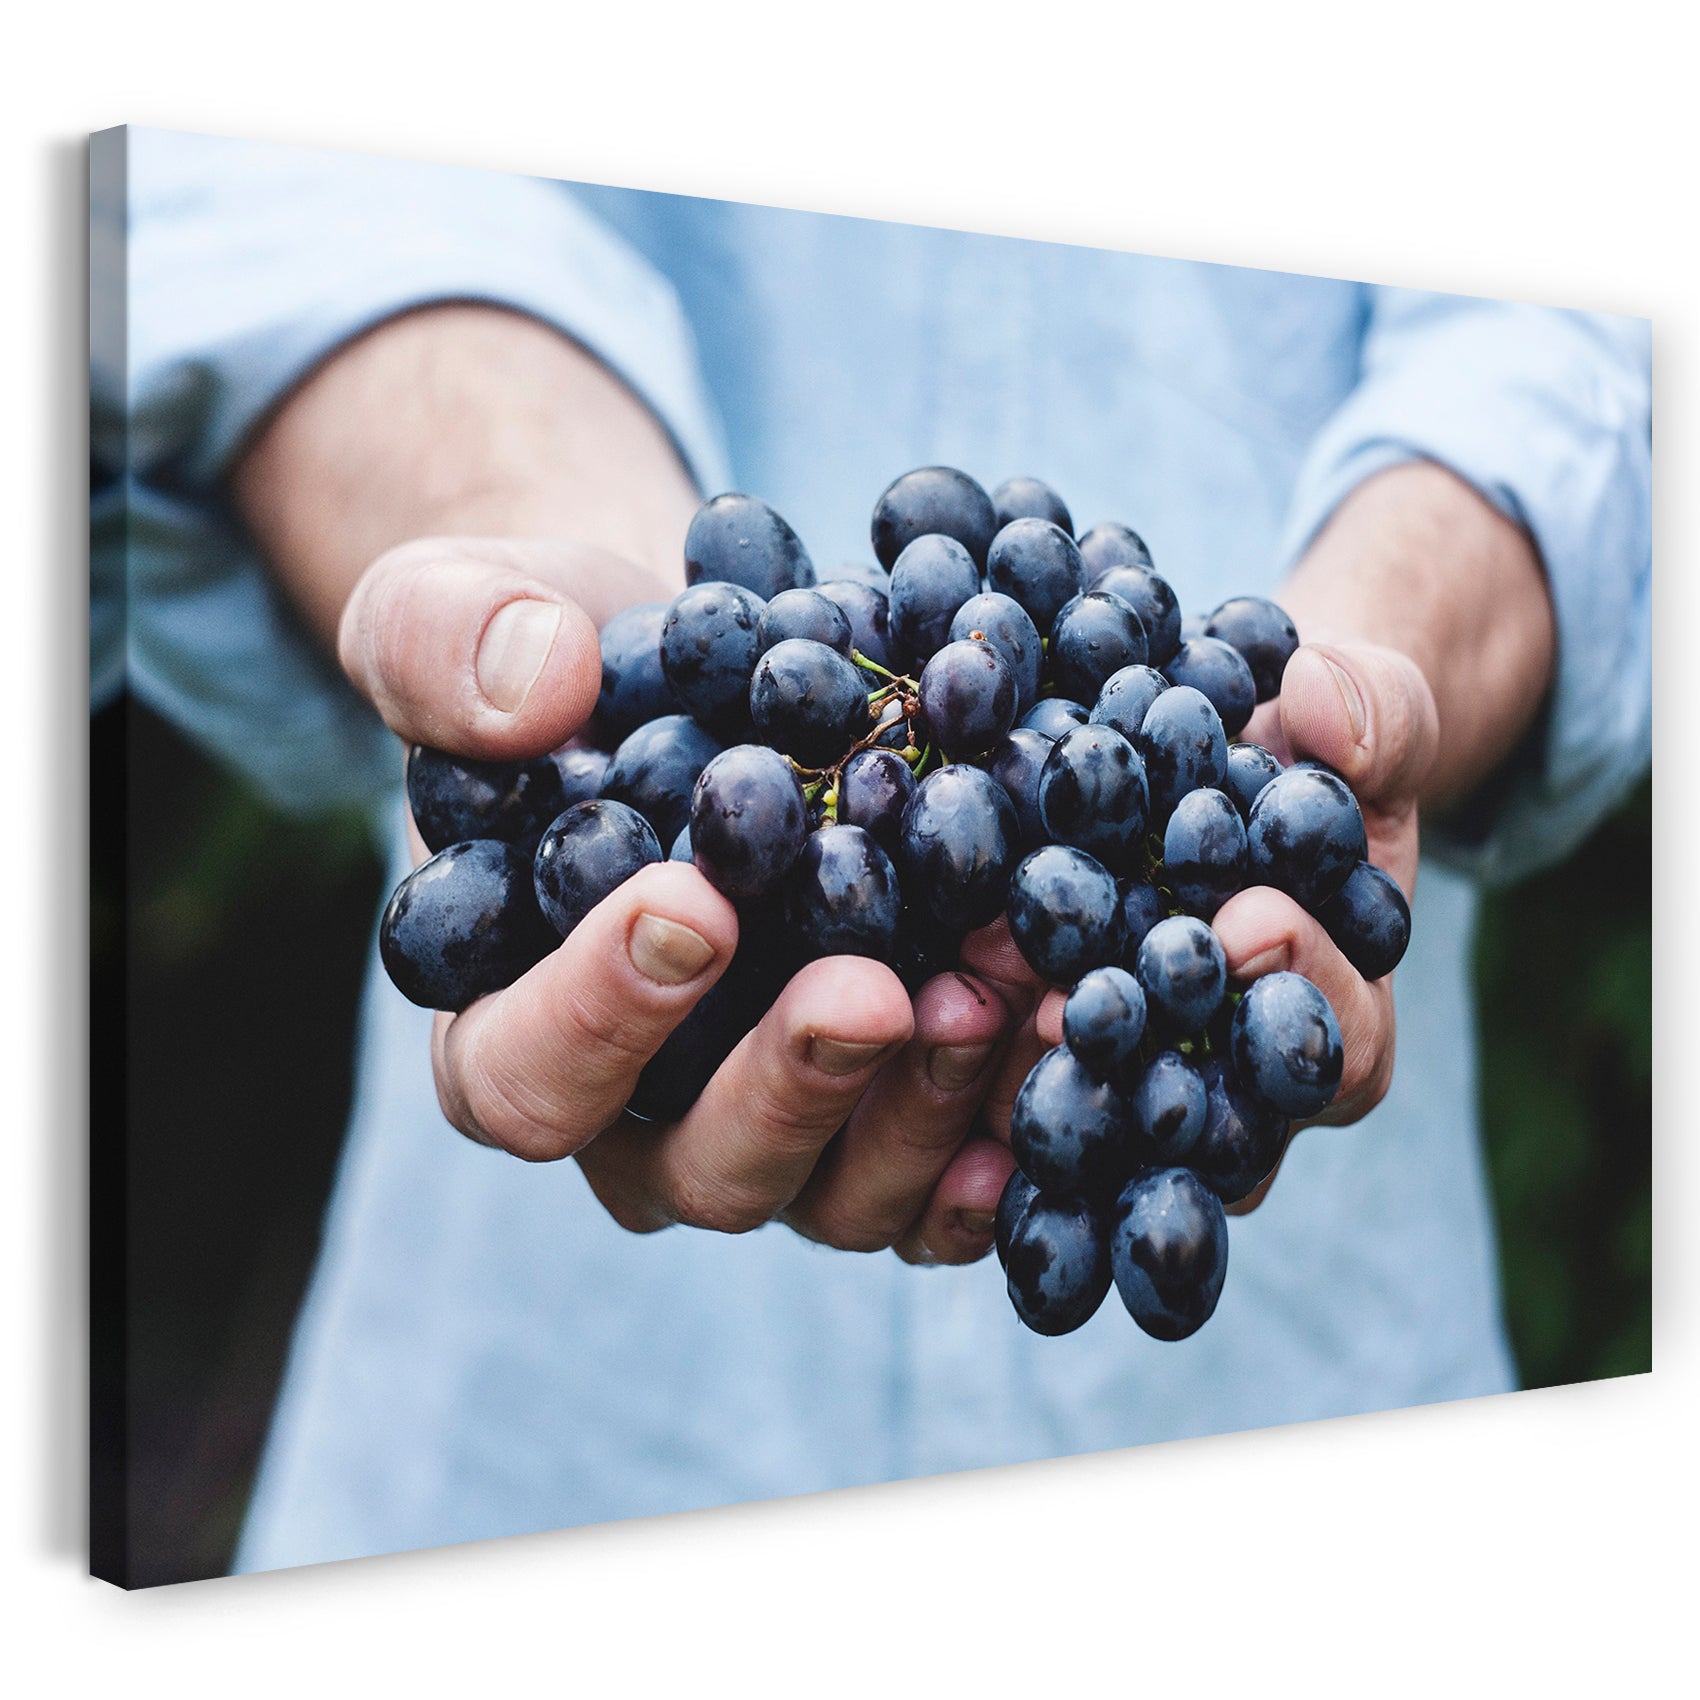 Leinwandbild Essensbilder Gemüse Obst Früchte Weintrauben in zwei Händen